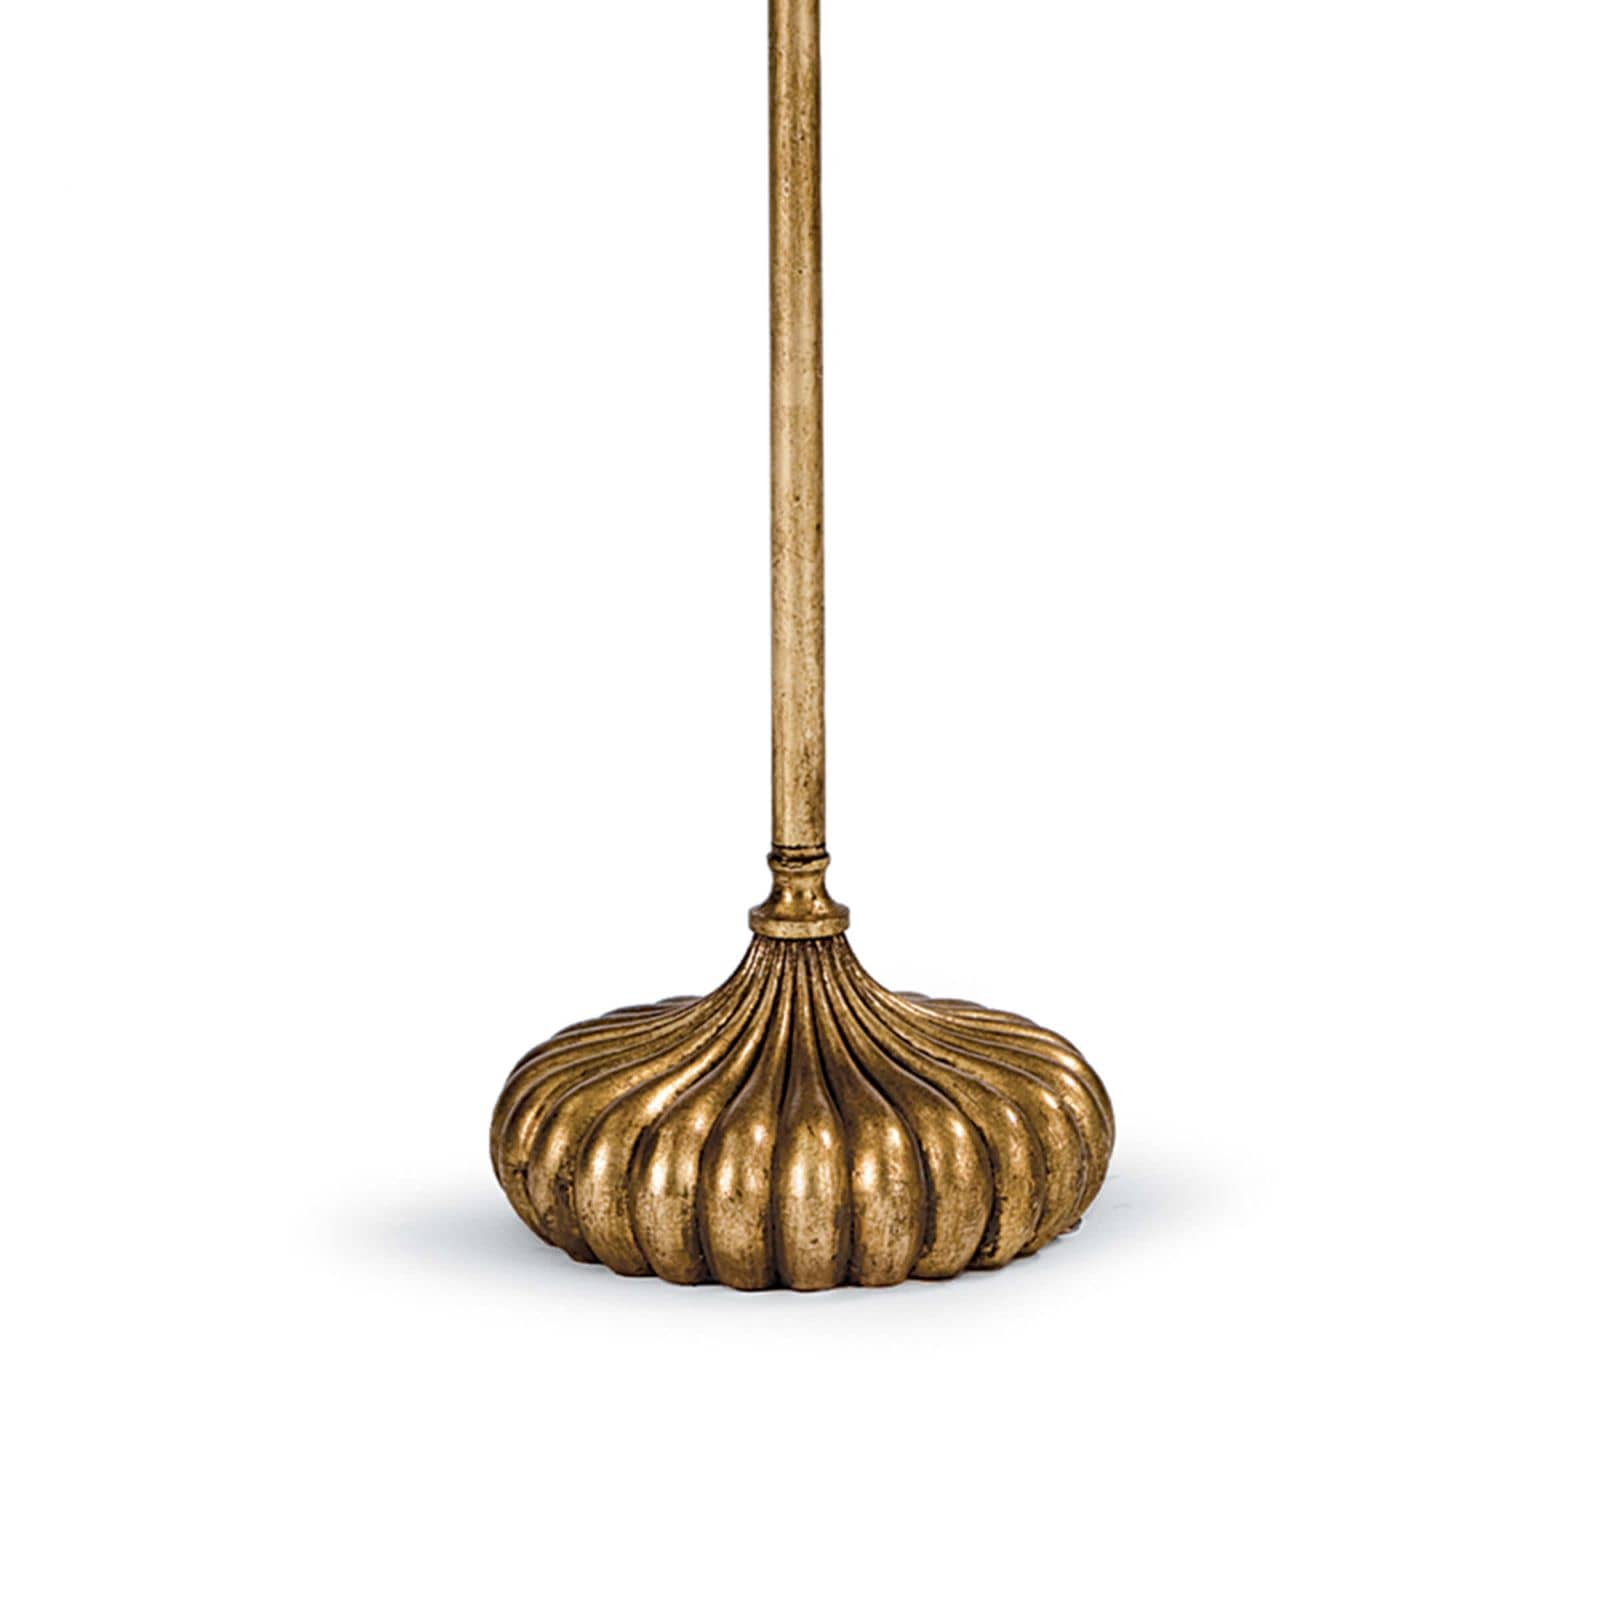 Regina Andrew Clove Stem Floor Lamp (Antique Gold Leaf)